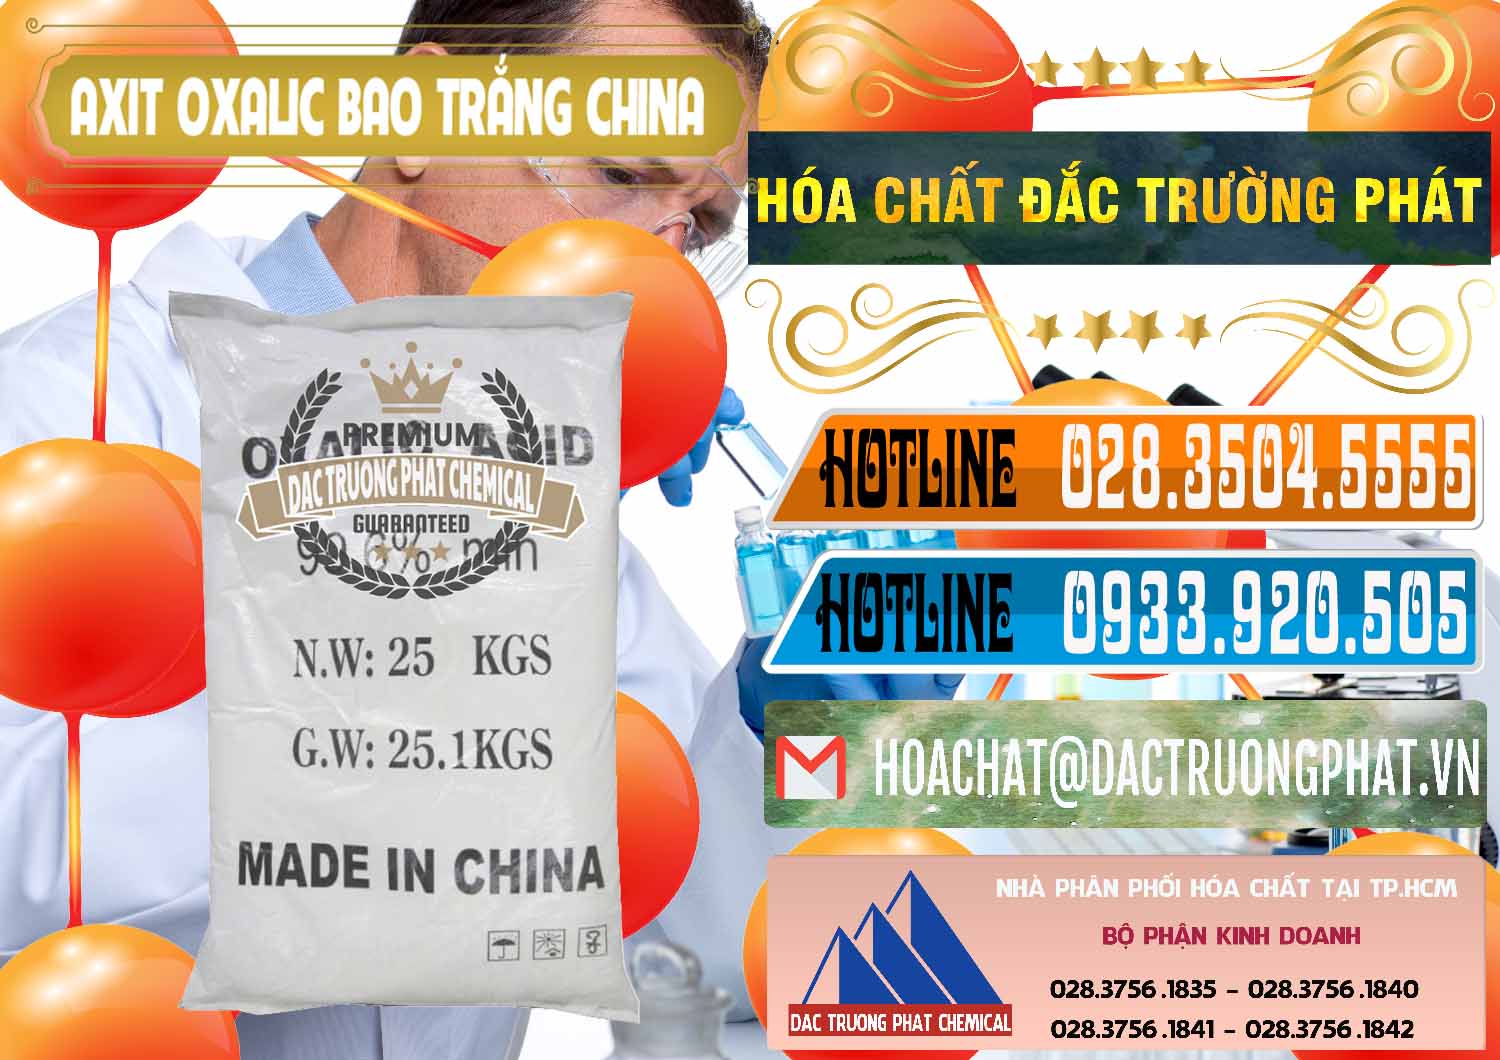 Đơn vị chuyên phân phối - bán Acid Oxalic – Axit Oxalic 99.6% Bao Trắng Trung Quốc China - 0270 - Đơn vị chuyên cung cấp _ kinh doanh hóa chất tại TP.HCM - stmp.net